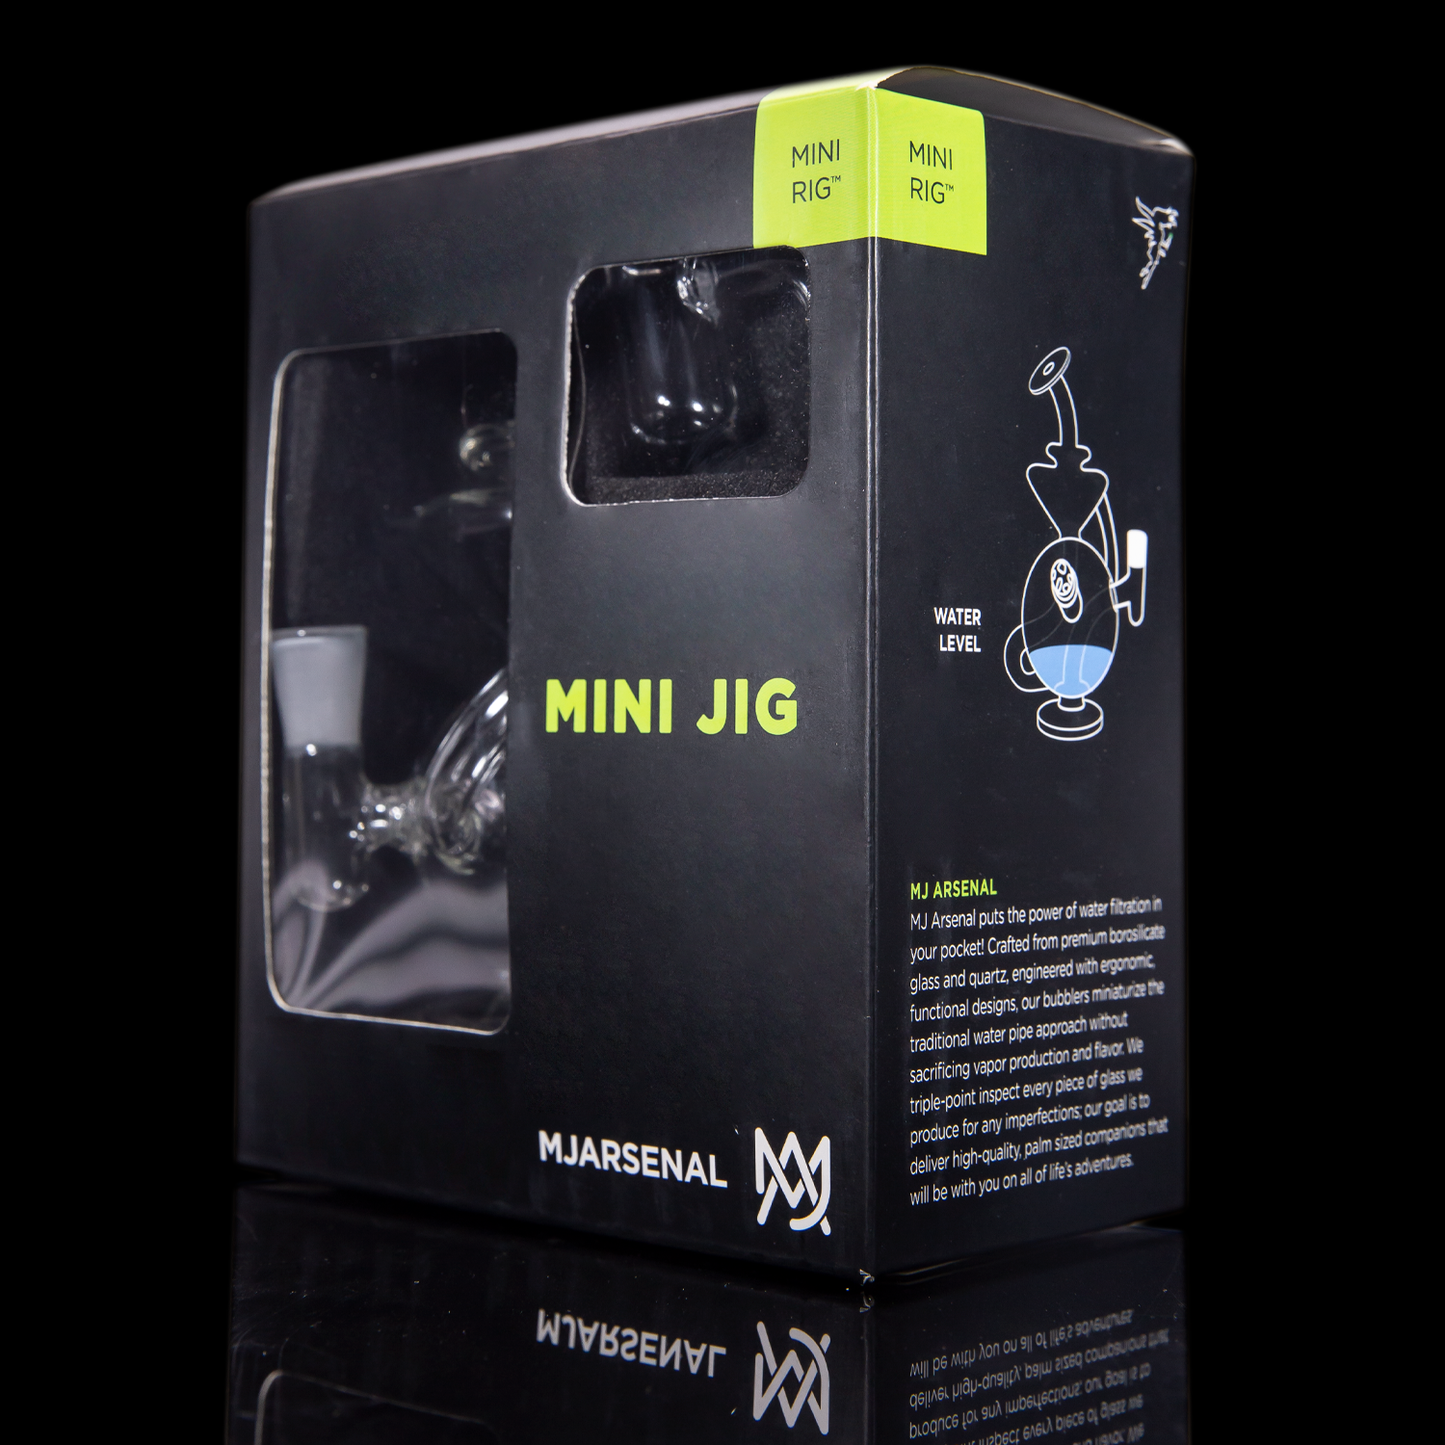 Mini Jig Mini Rig